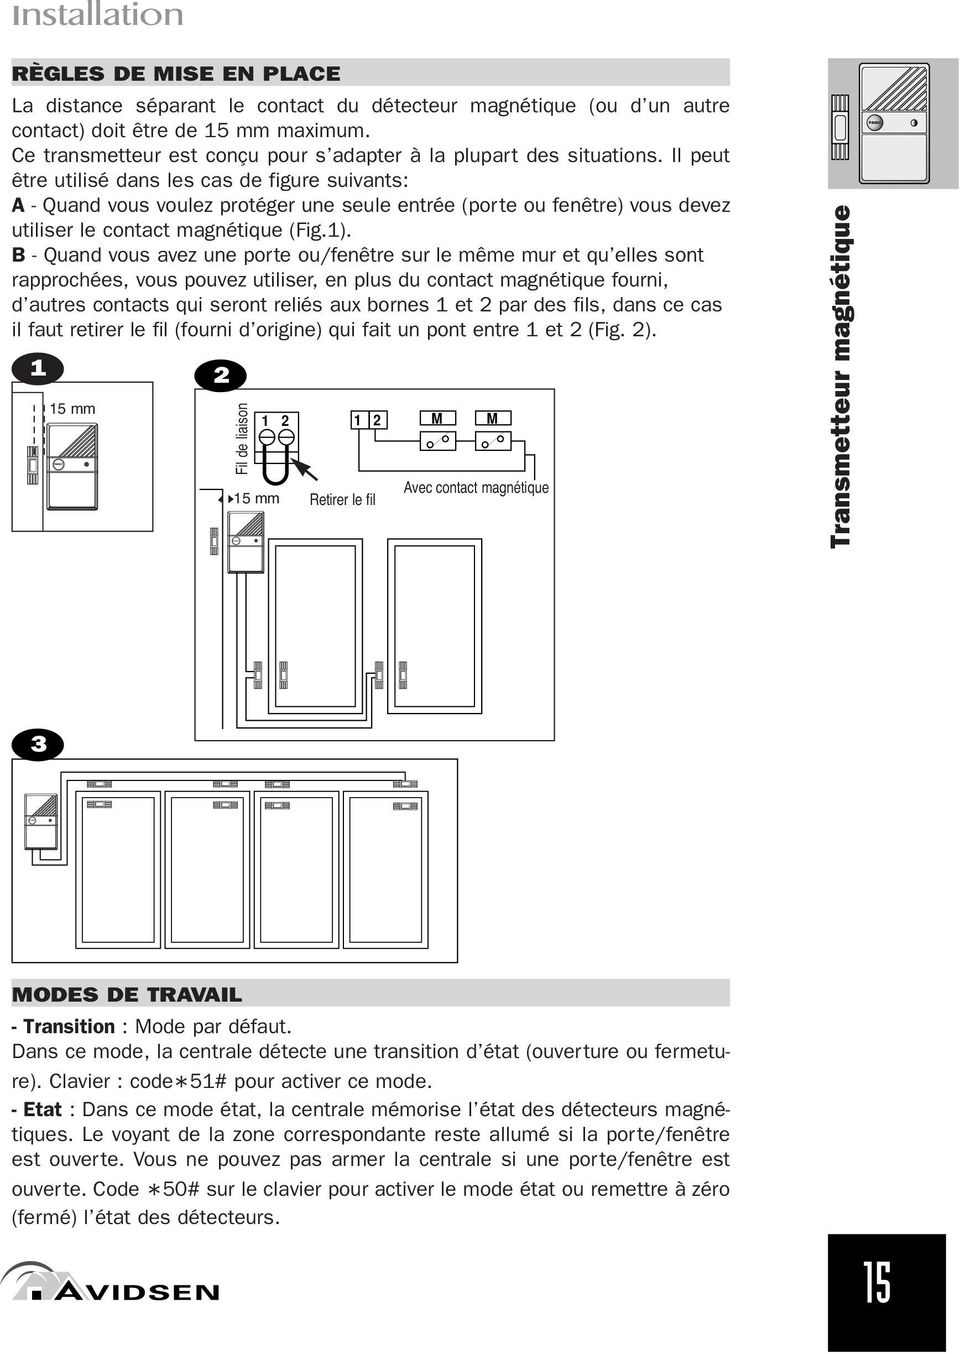 Il peut être utilisé dans les cas de figure suivants: A - Quand vous voulez protéger une seule entrée (porte ou fenêtre) 